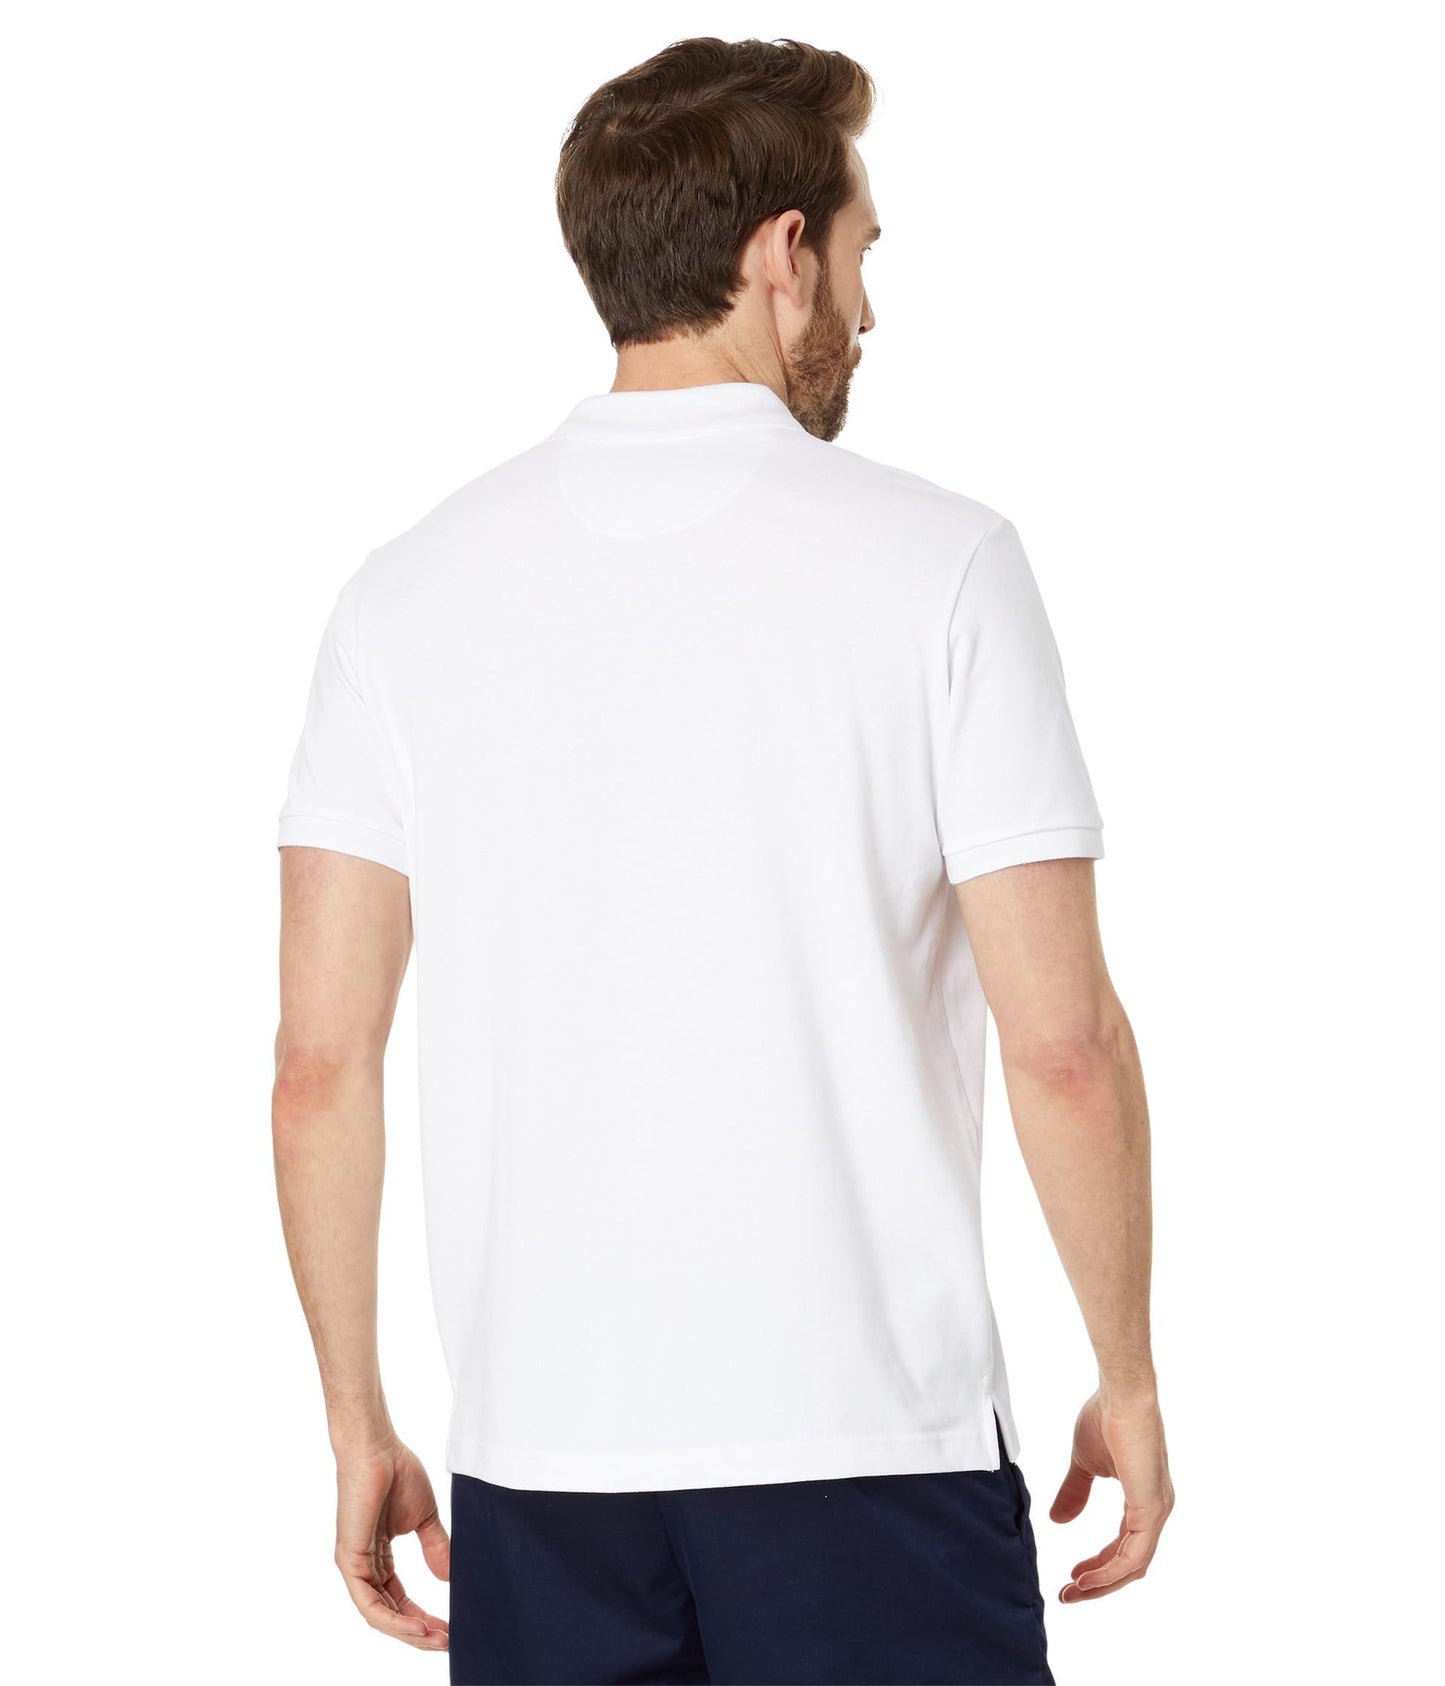 U.S. POLO ASSN. Men's Color Block Vertical Graphic Pique Short Sleeve Polo Shirt, White Amazon